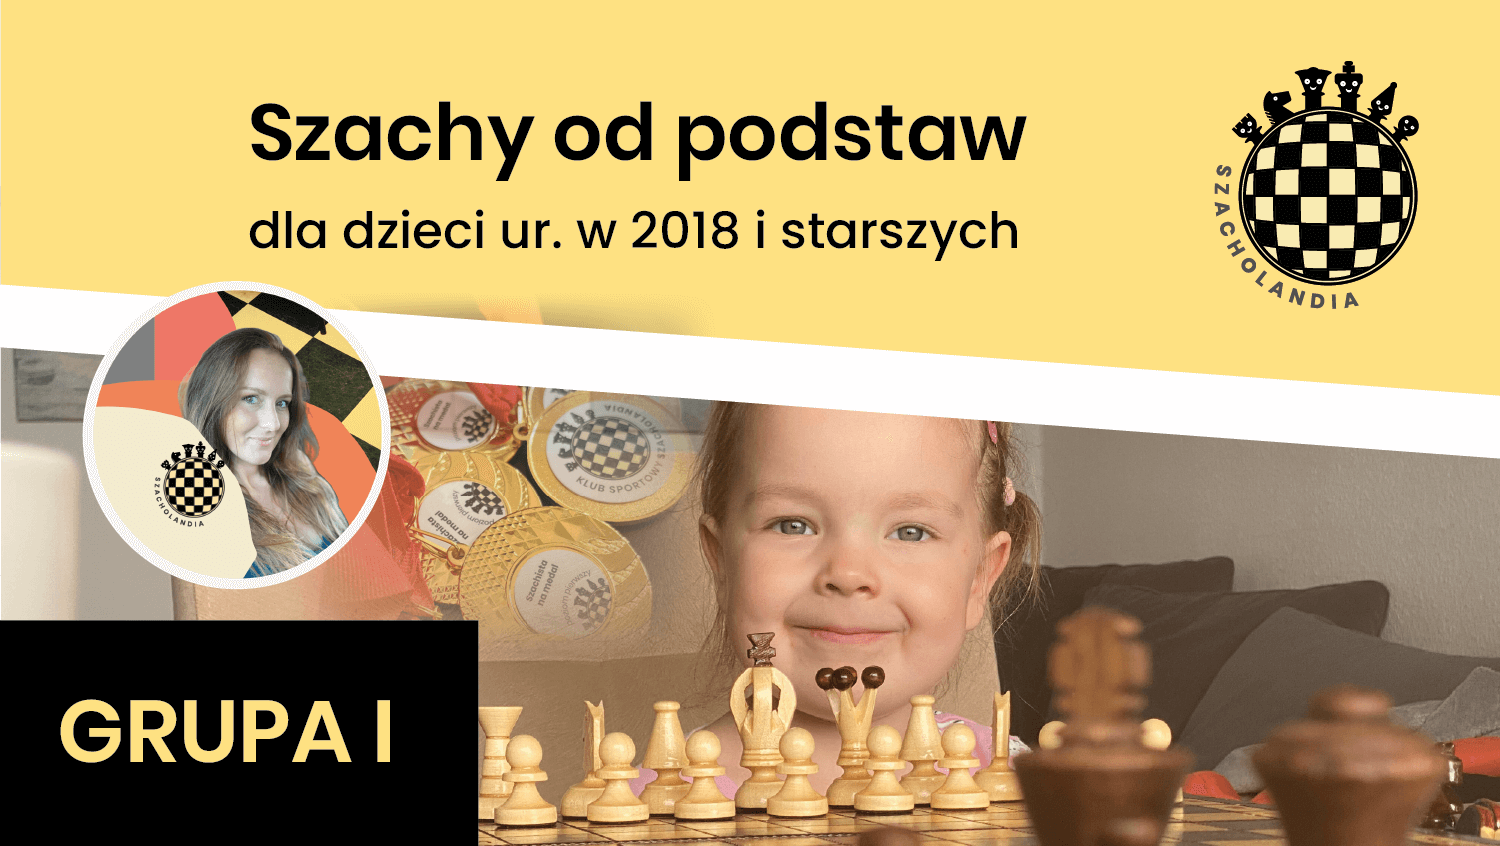 SZACHOLANDIA Grupa I Szachy od podstaw – zajęcia szachowe w Warszawie